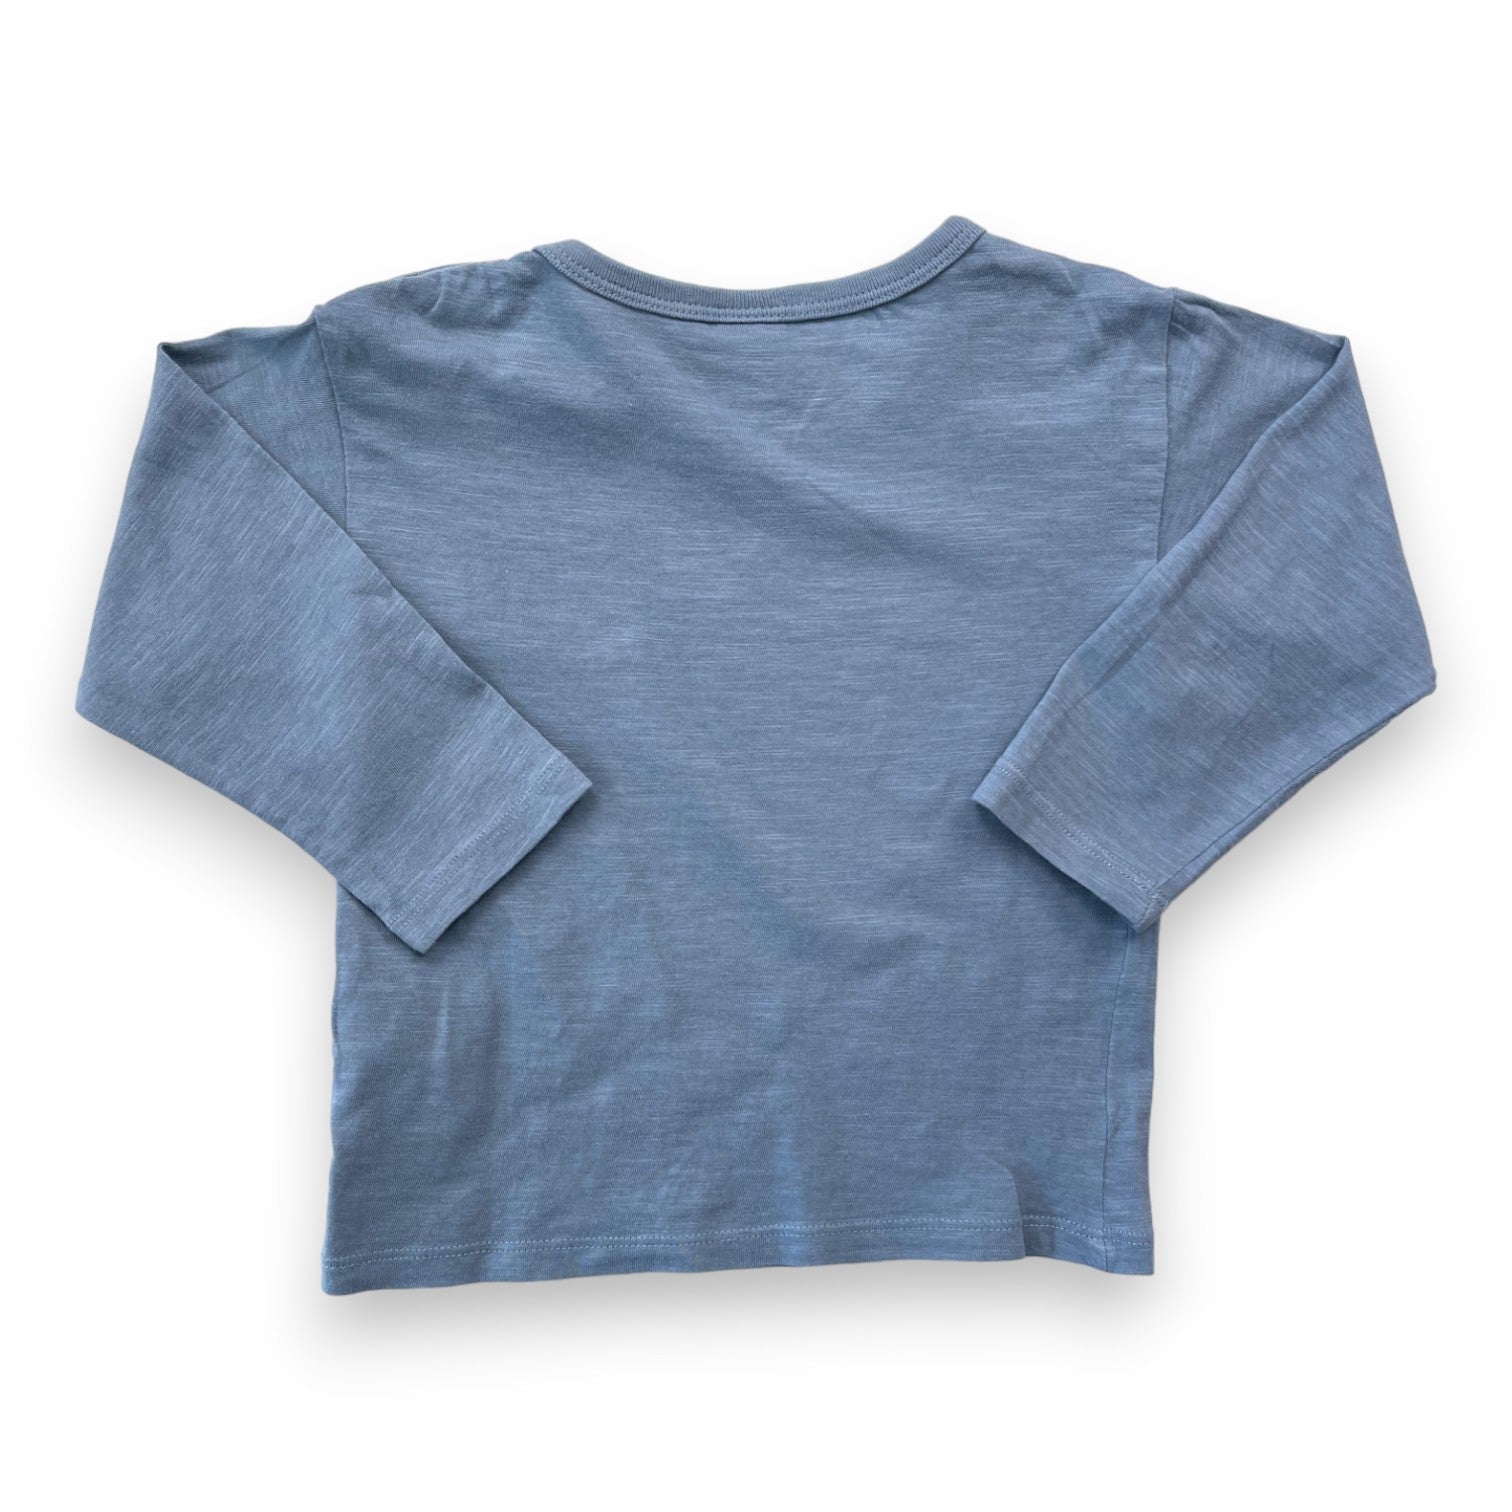 PETIT BATEAU - T shirt manches longues bleu/gris - 2 ans